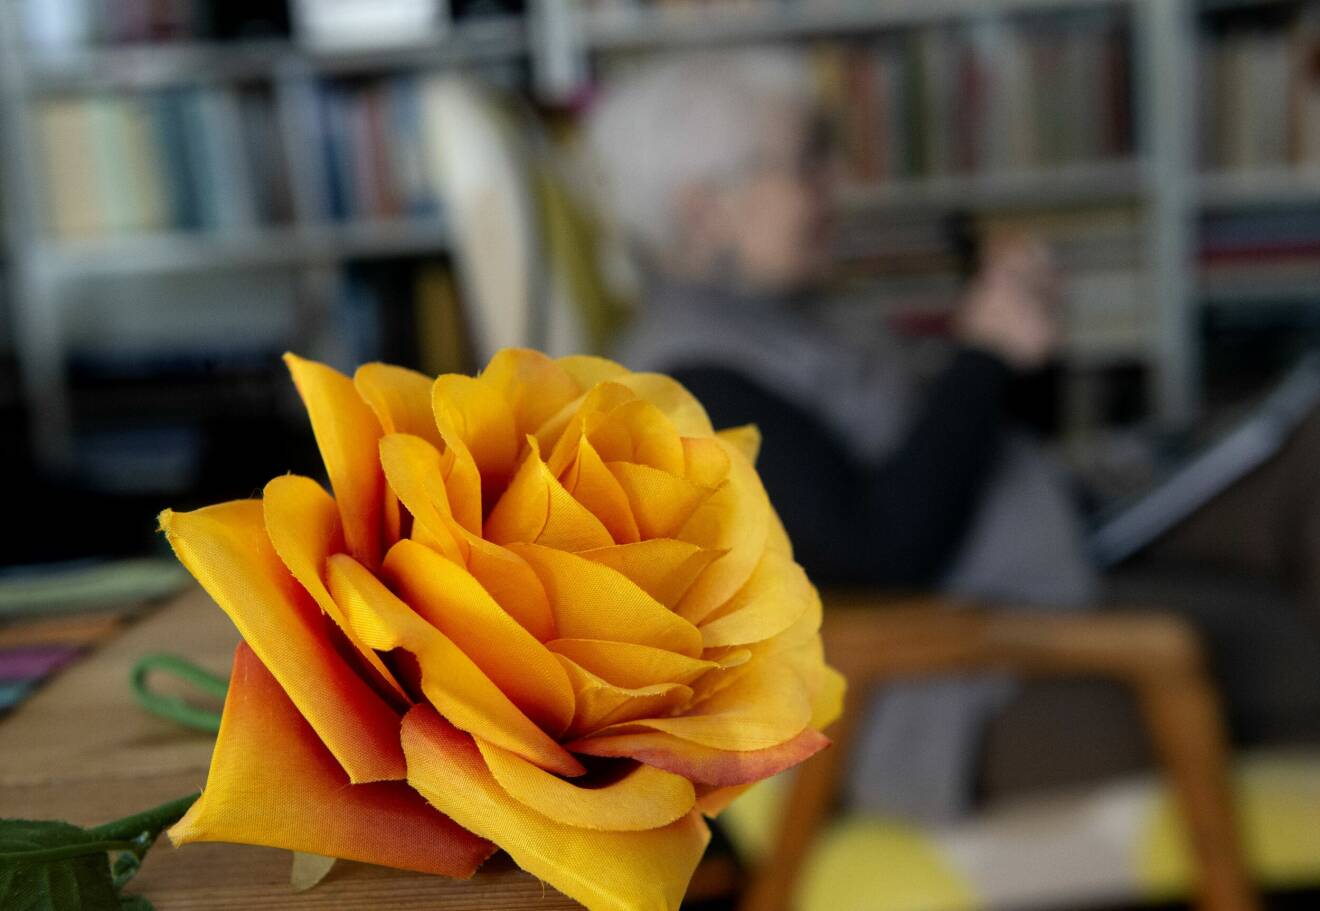 Den orangea rosen i plast är ett kärt minne från tiden då Astrid vistades mycket i Ukraina.